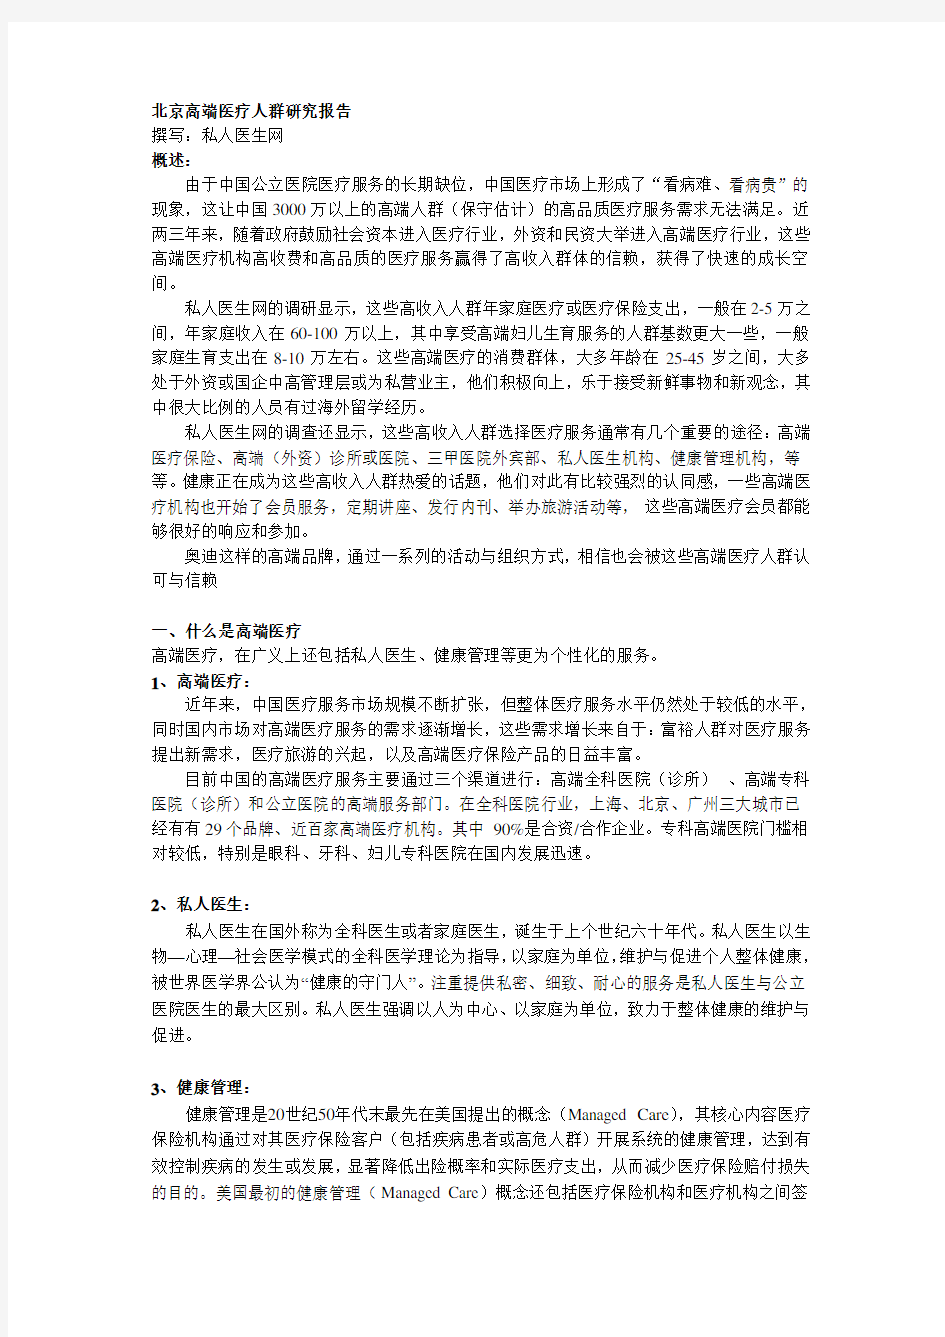 北京高端医疗人群分析报告